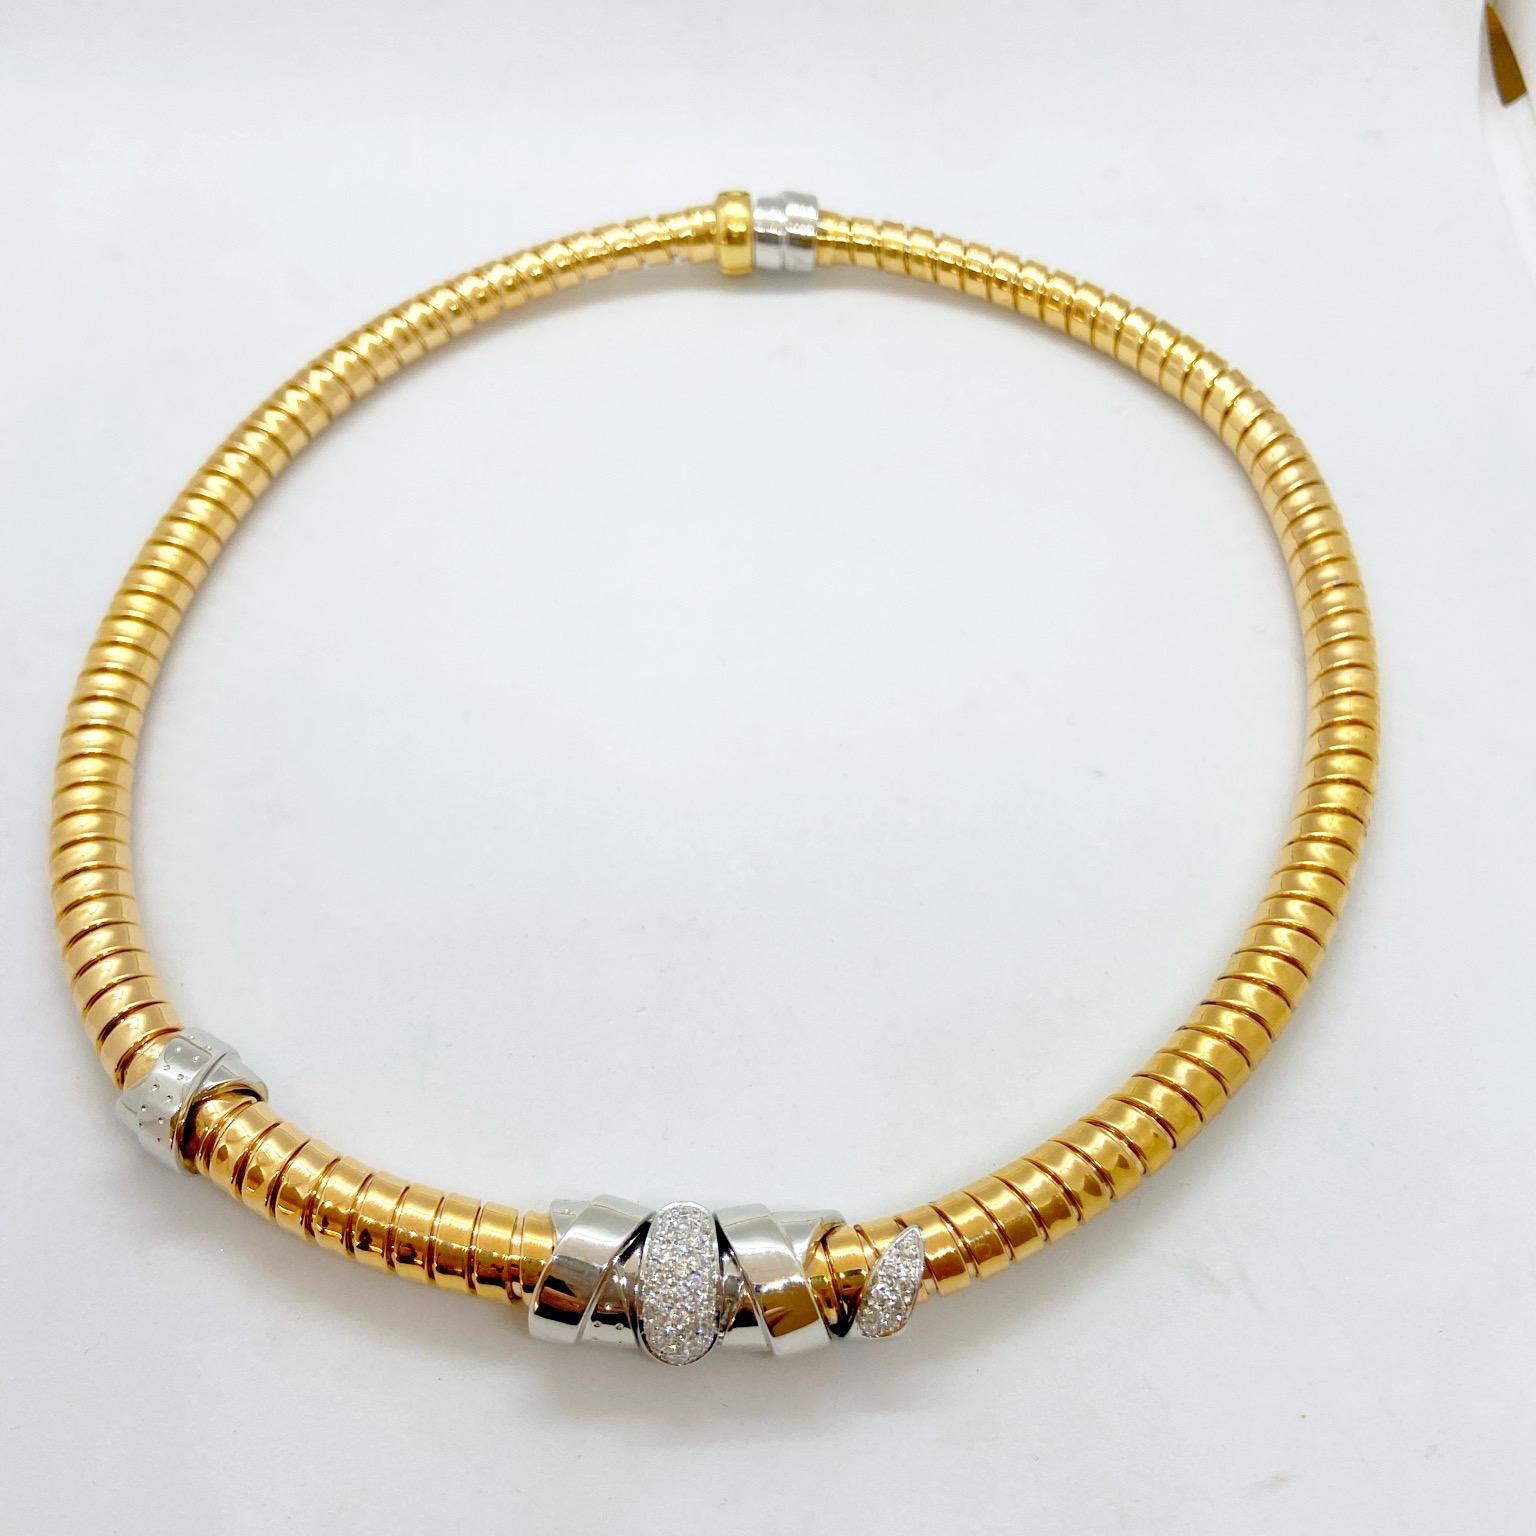 Contemporary La Nouvelle Bague 18 Karat Rose Gold Tubogas Necklace with .60 Carat Diamonds